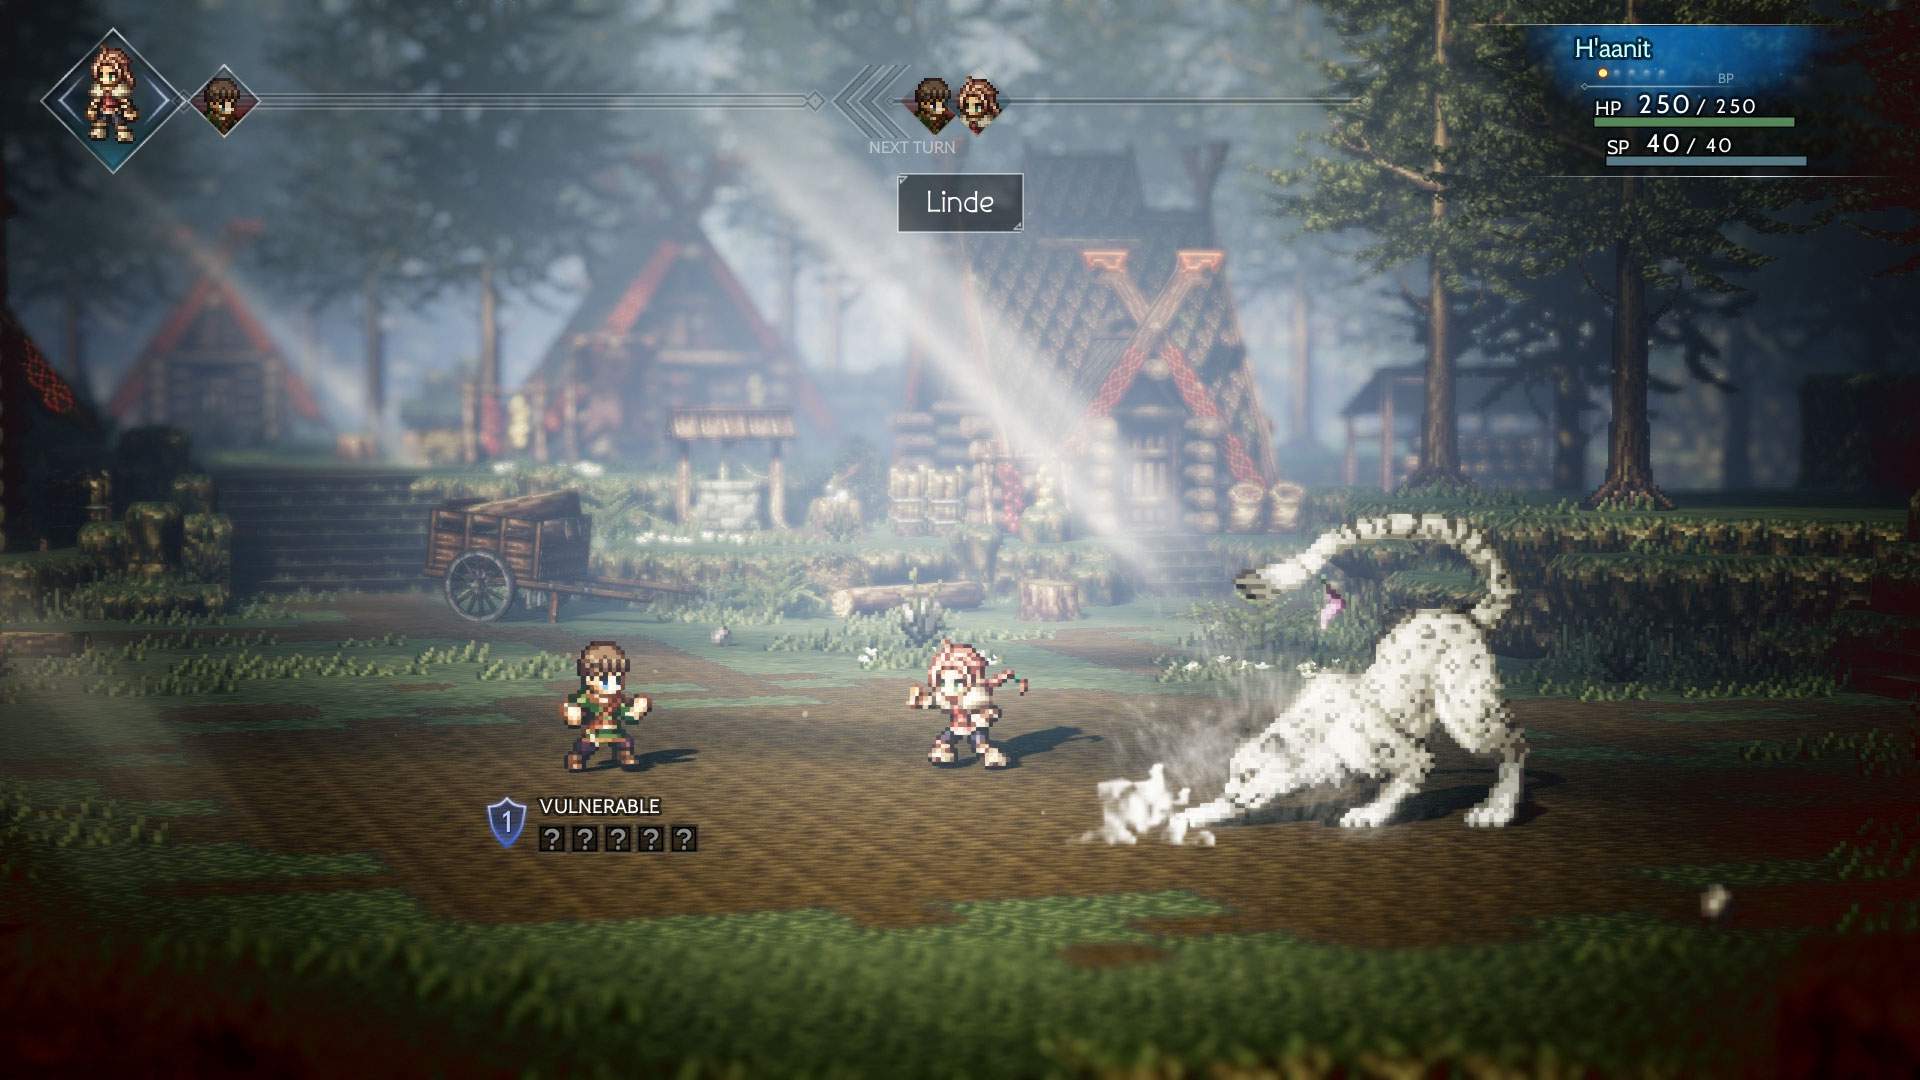 Captura de tela do combate: H'aanit envolvido em um combate por turnos em uma fazenda.